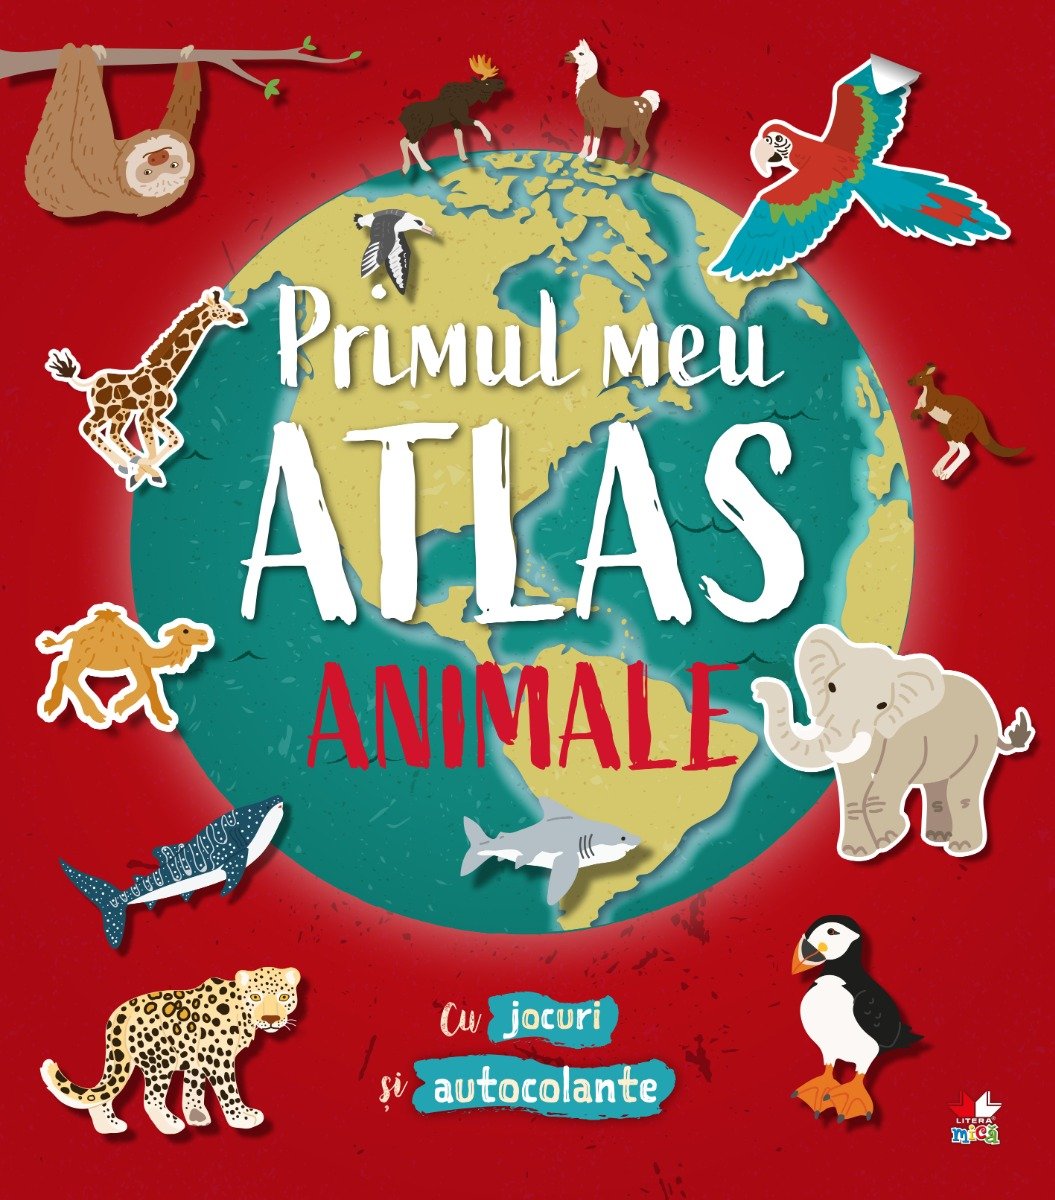 Primul meu atlas, Animale